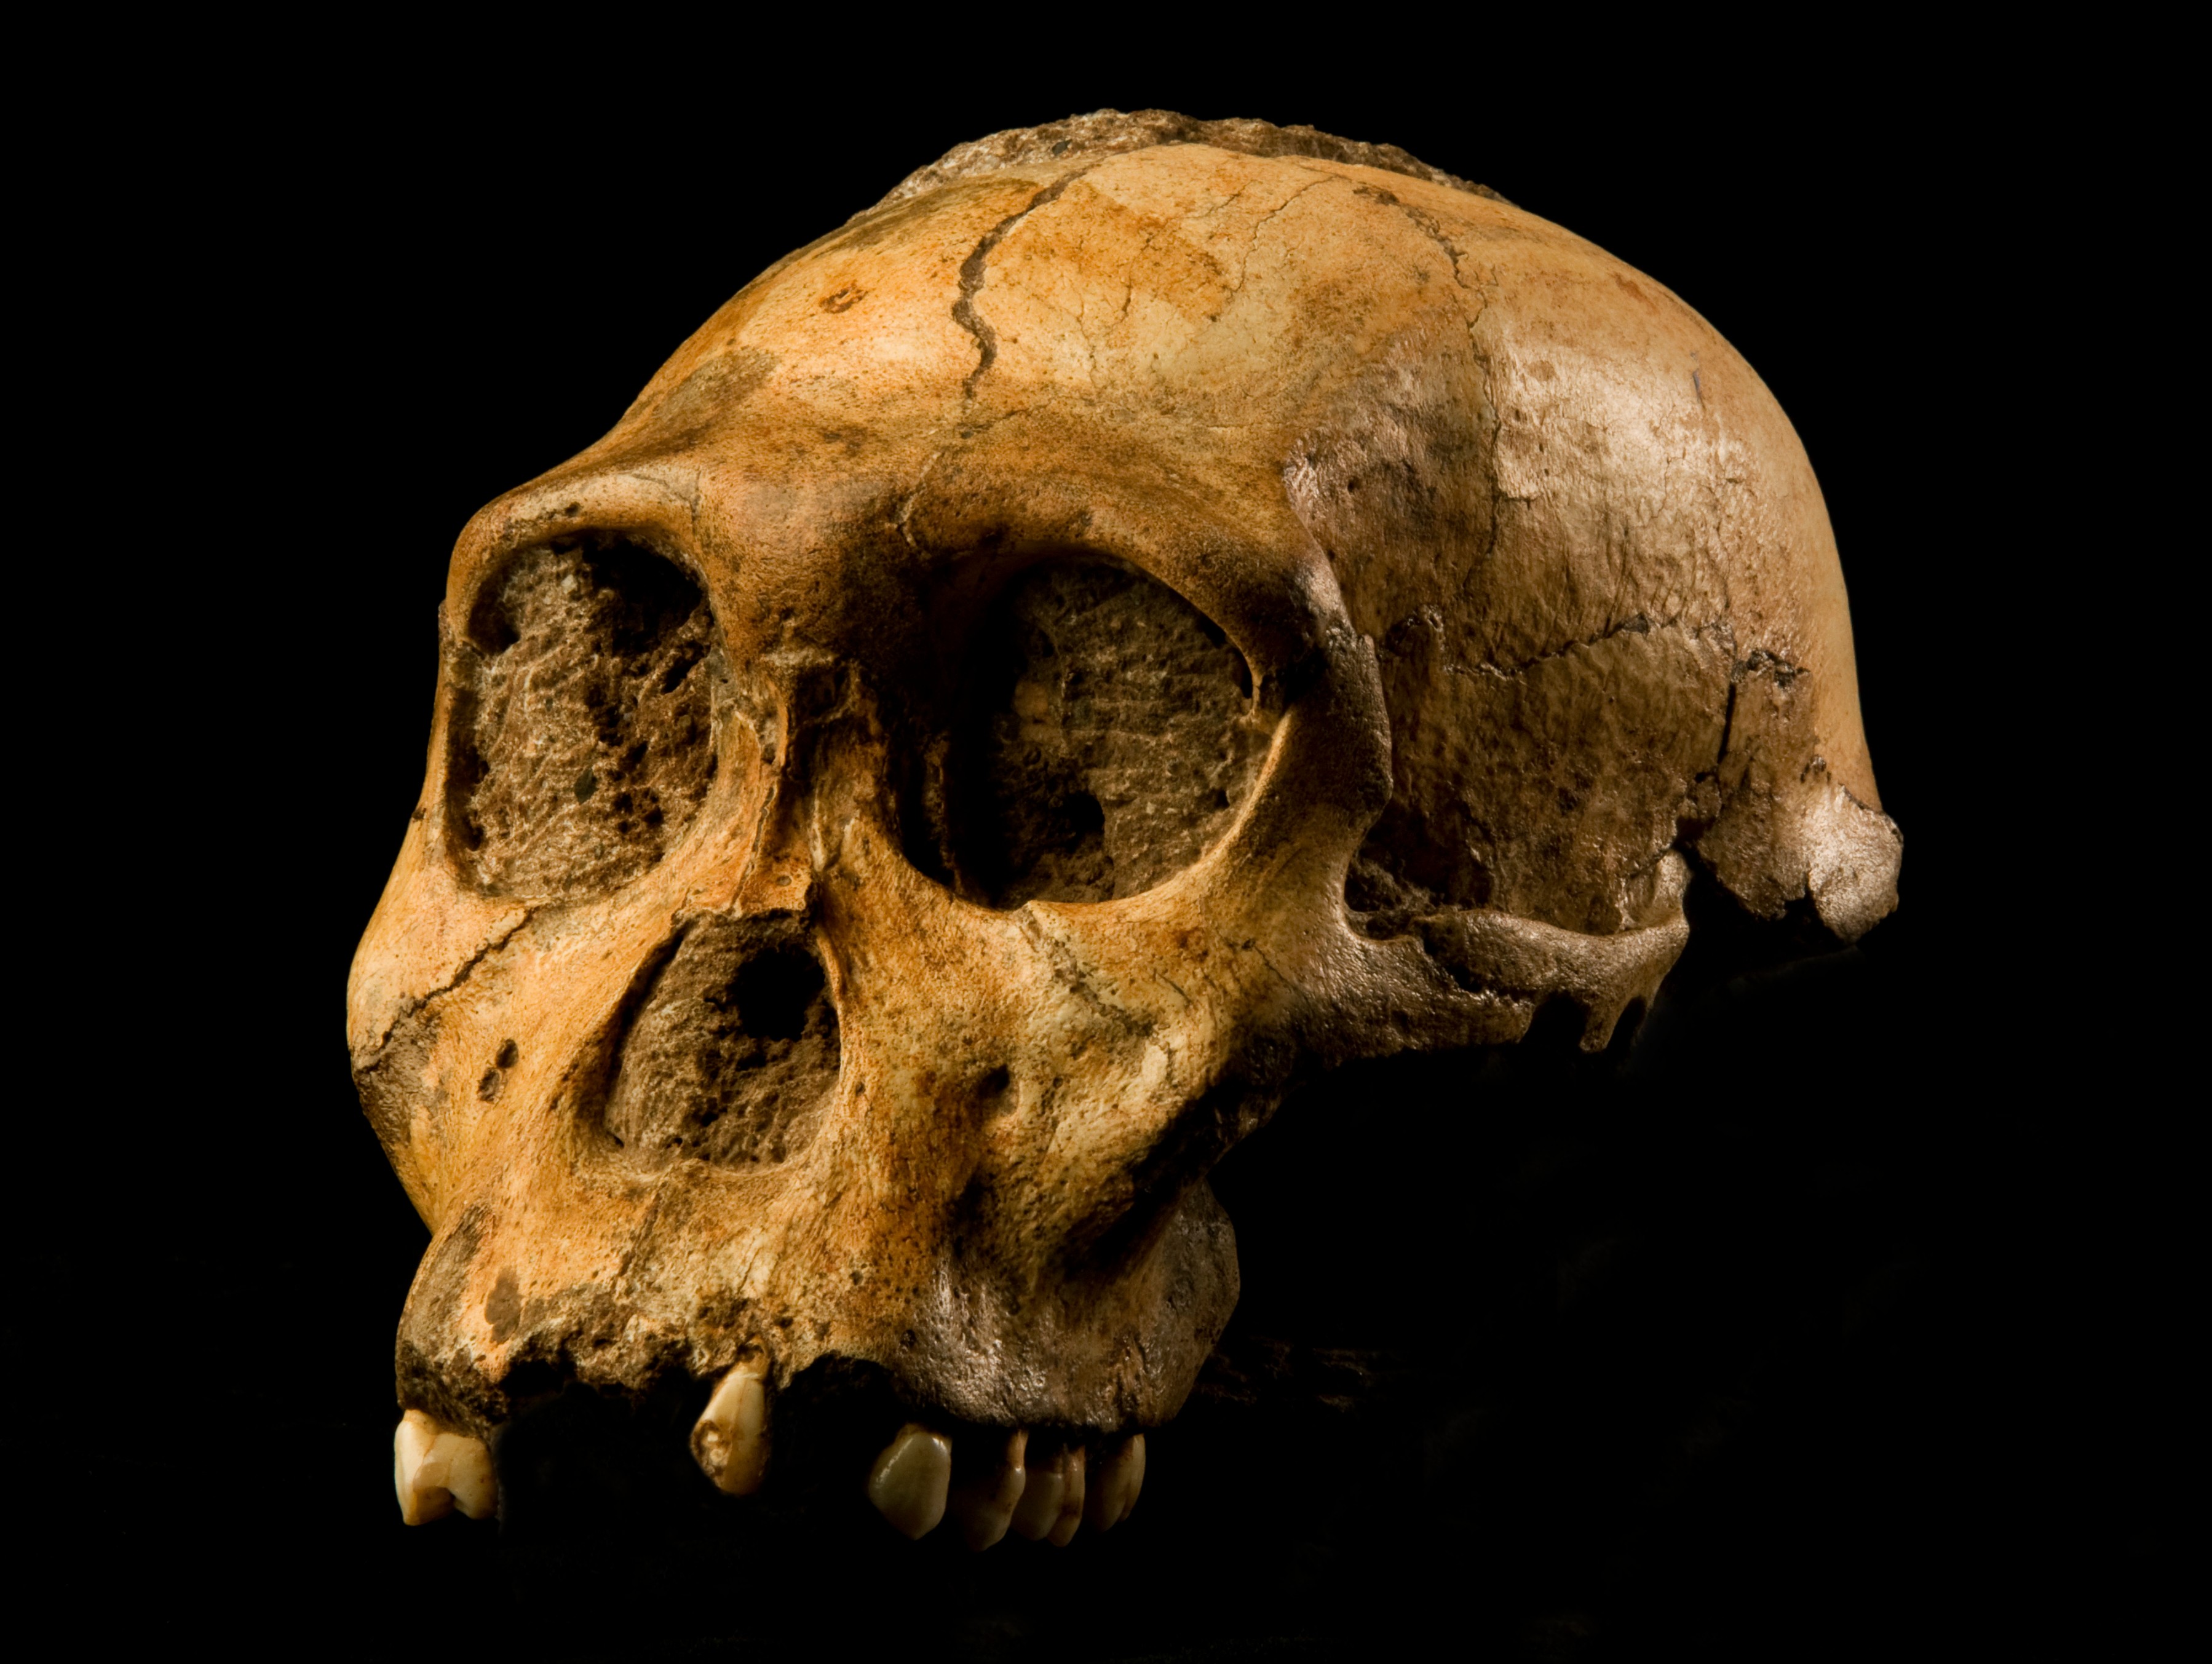  crânio de australopithecus (Foto: wikimedia commons)